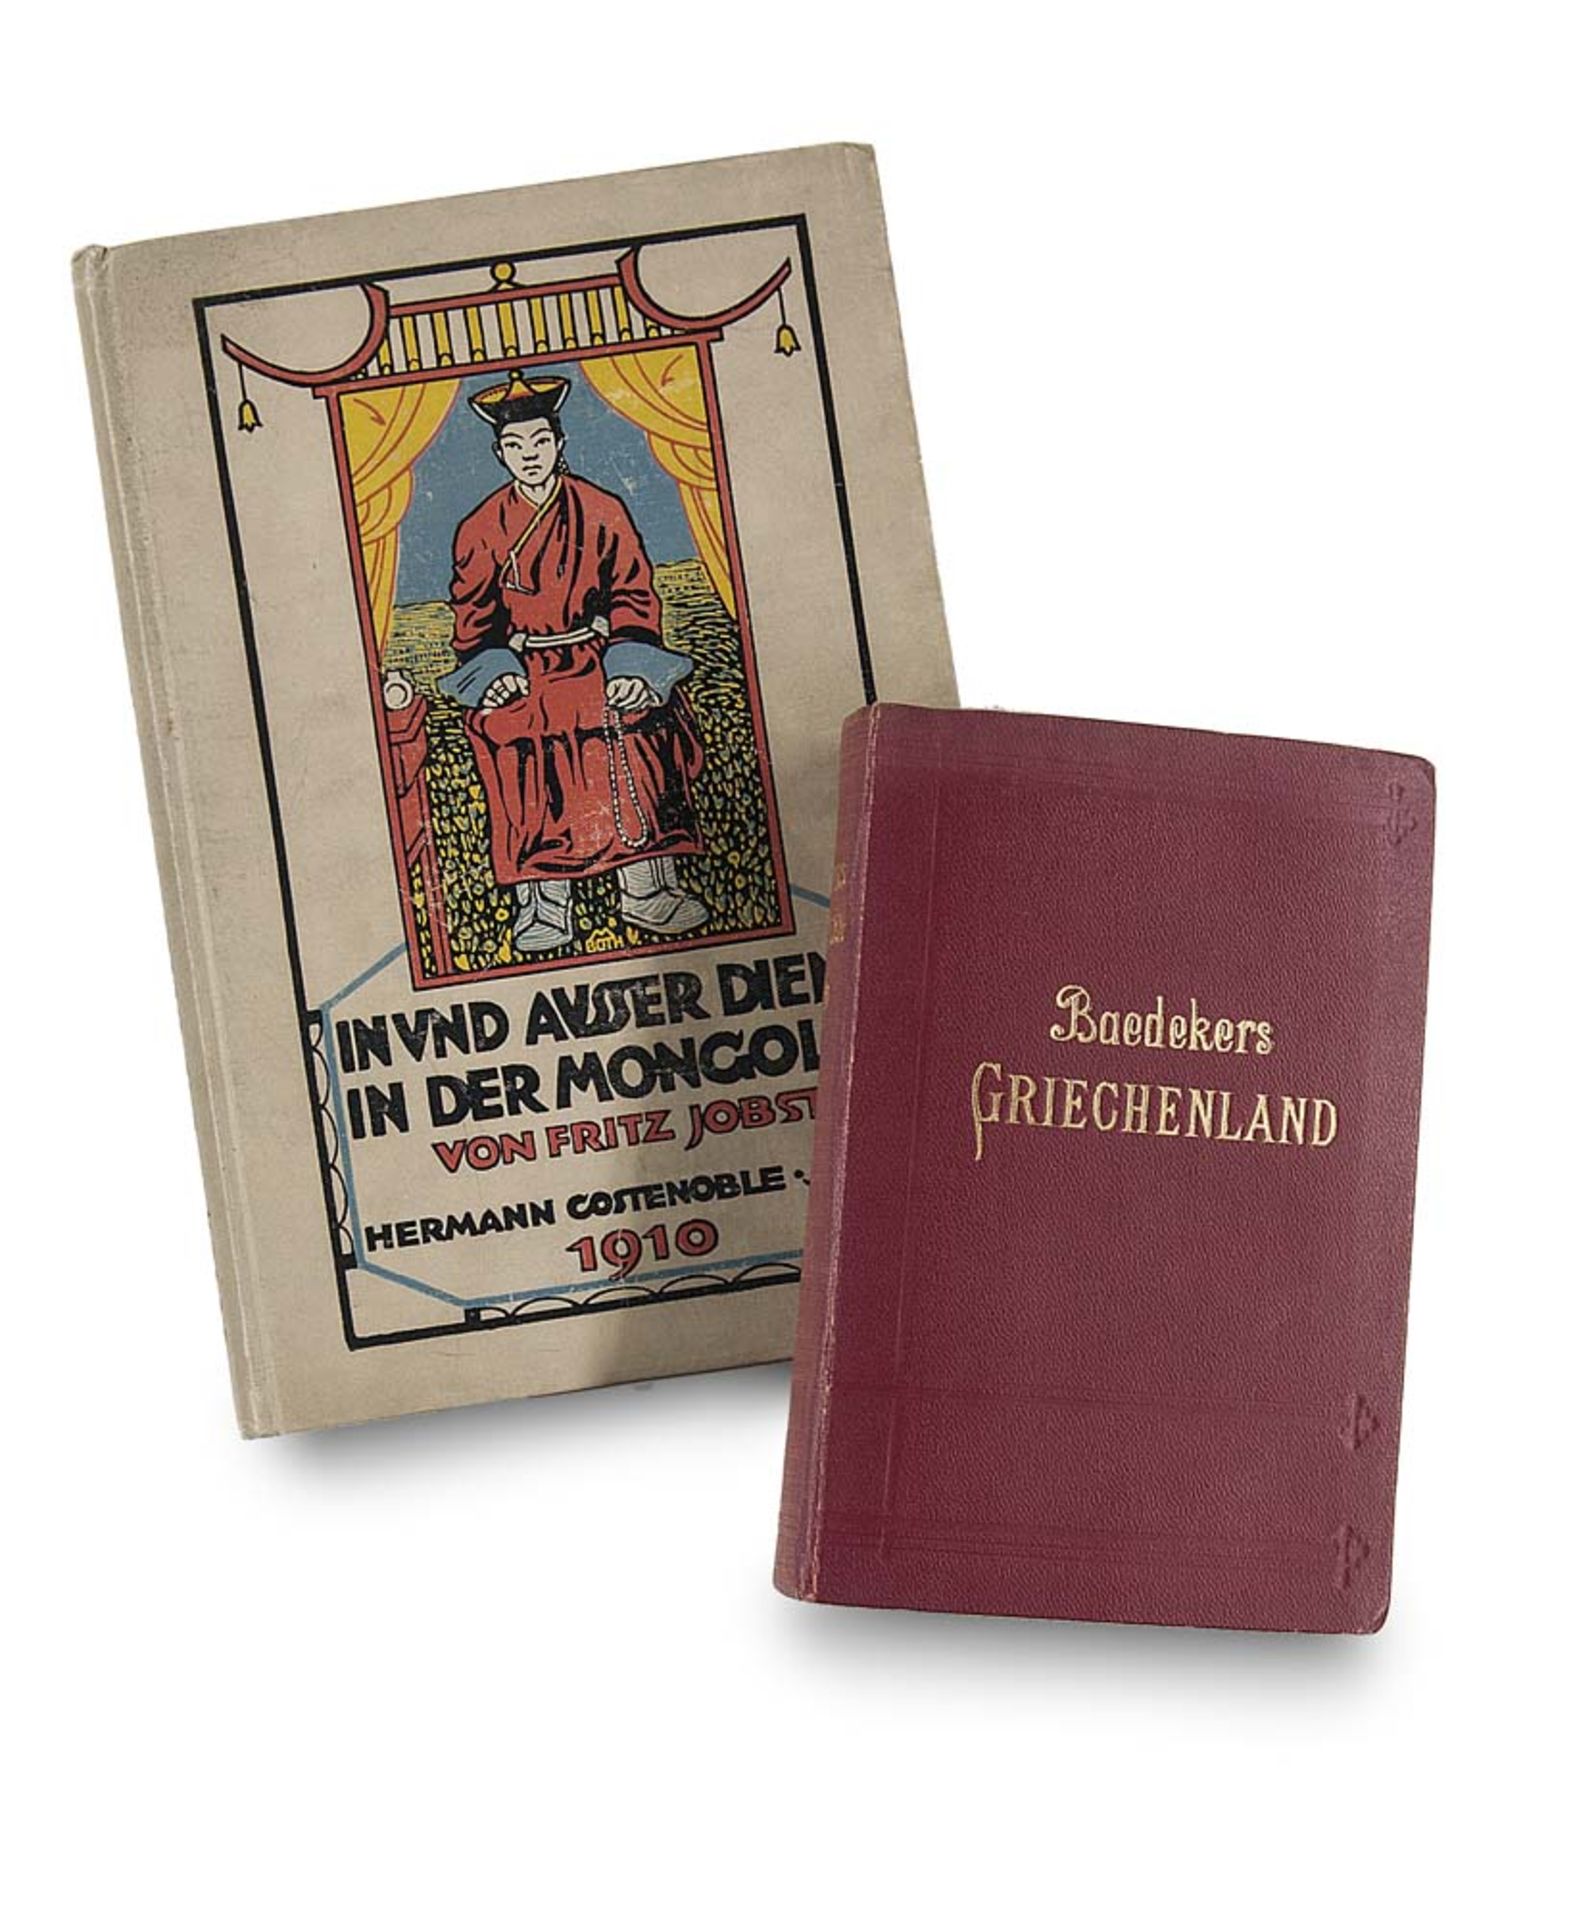 Baedeker, Karl. Griechenland. Handbuch für Reisende. 5. Aufl. Mit 1 Panorama von Athen, 15 Karten,